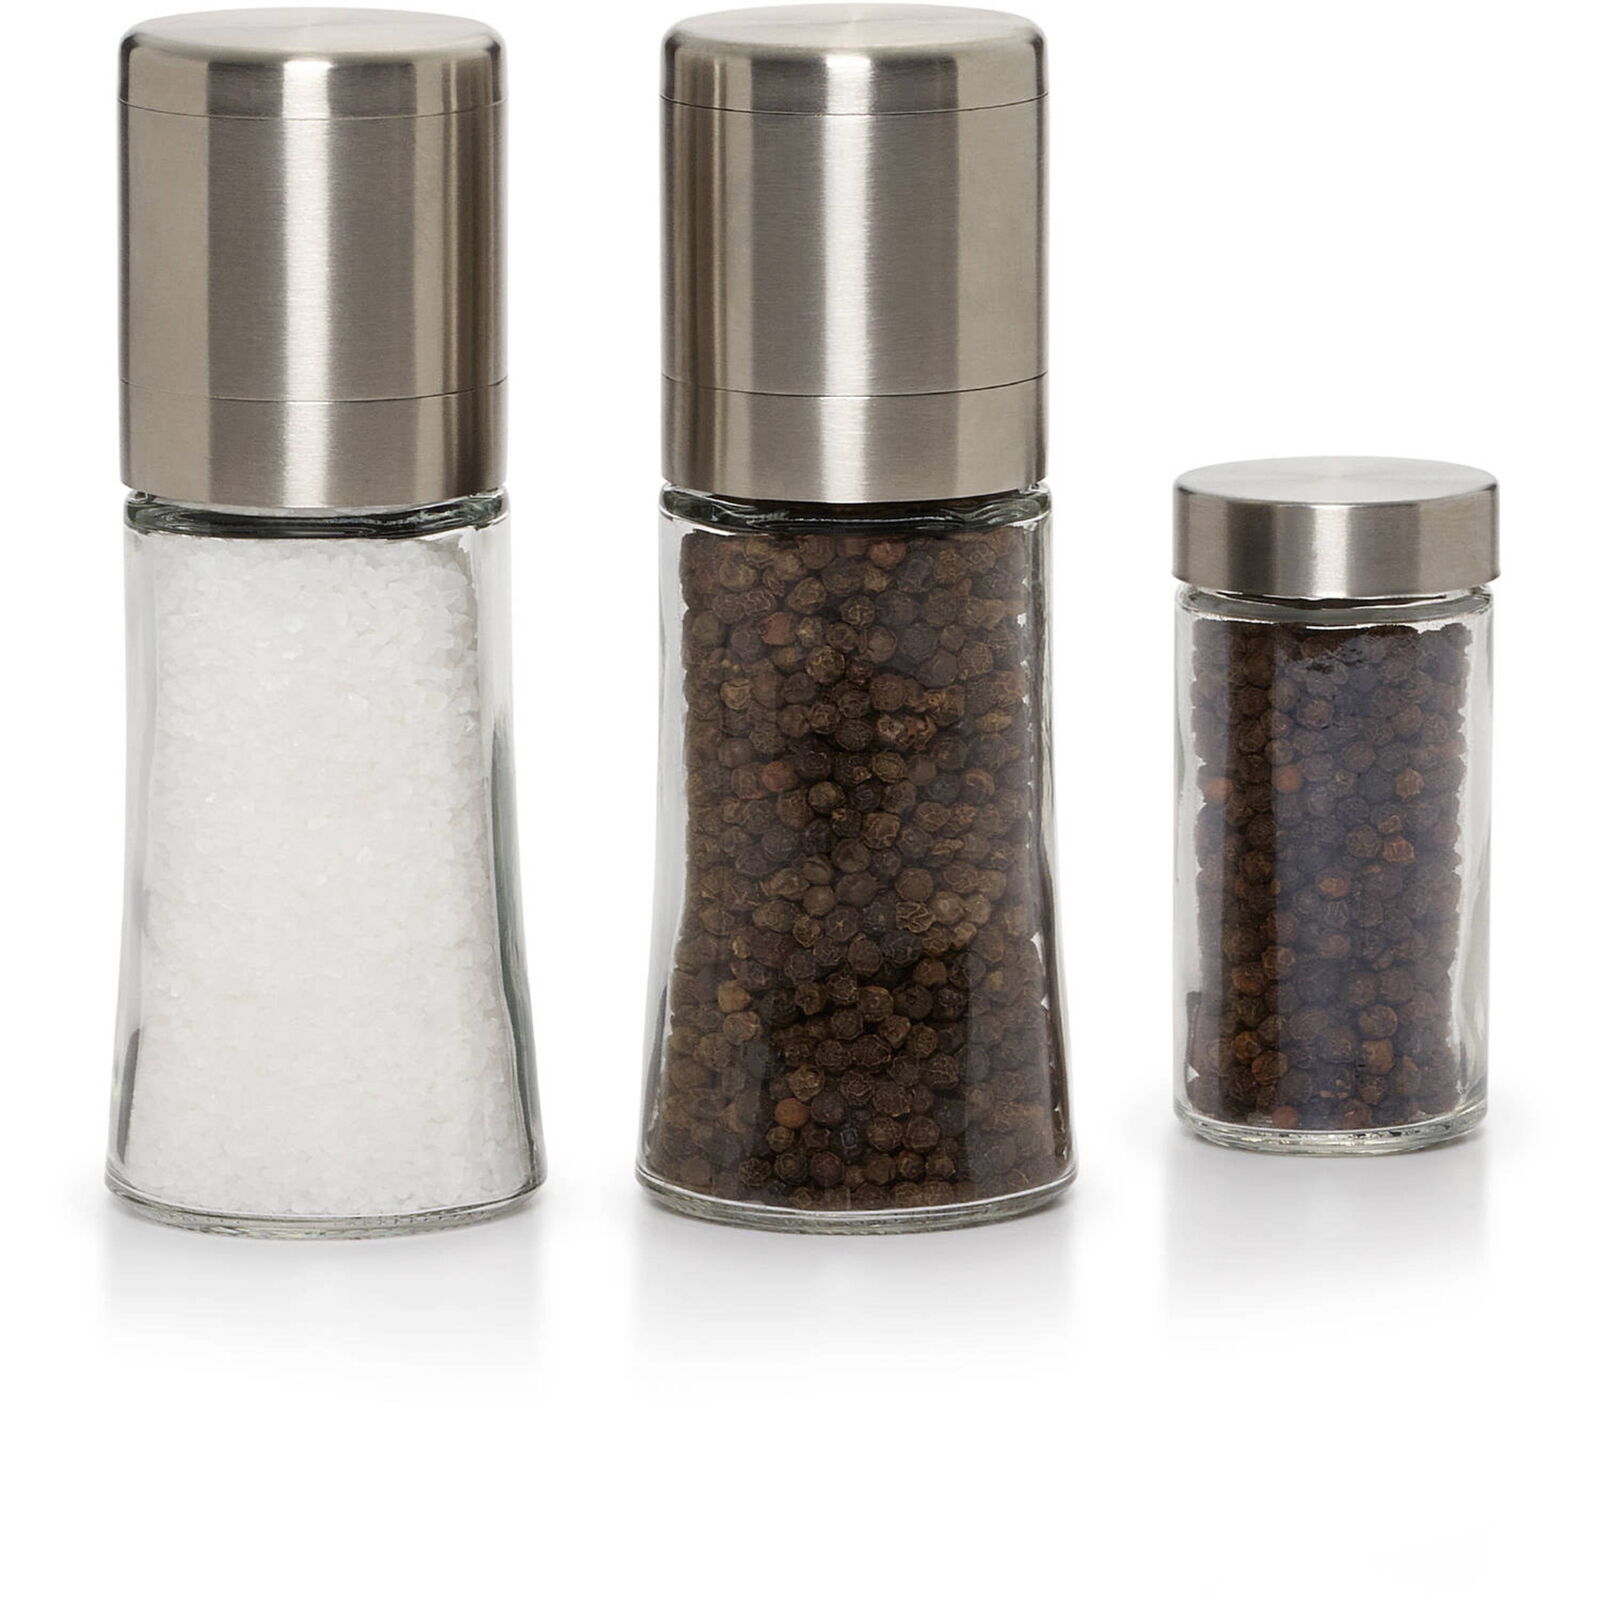 Kamenstein Elite Pre-Filled Salt and Pepper Grinder Set with Pepper Refill Jar